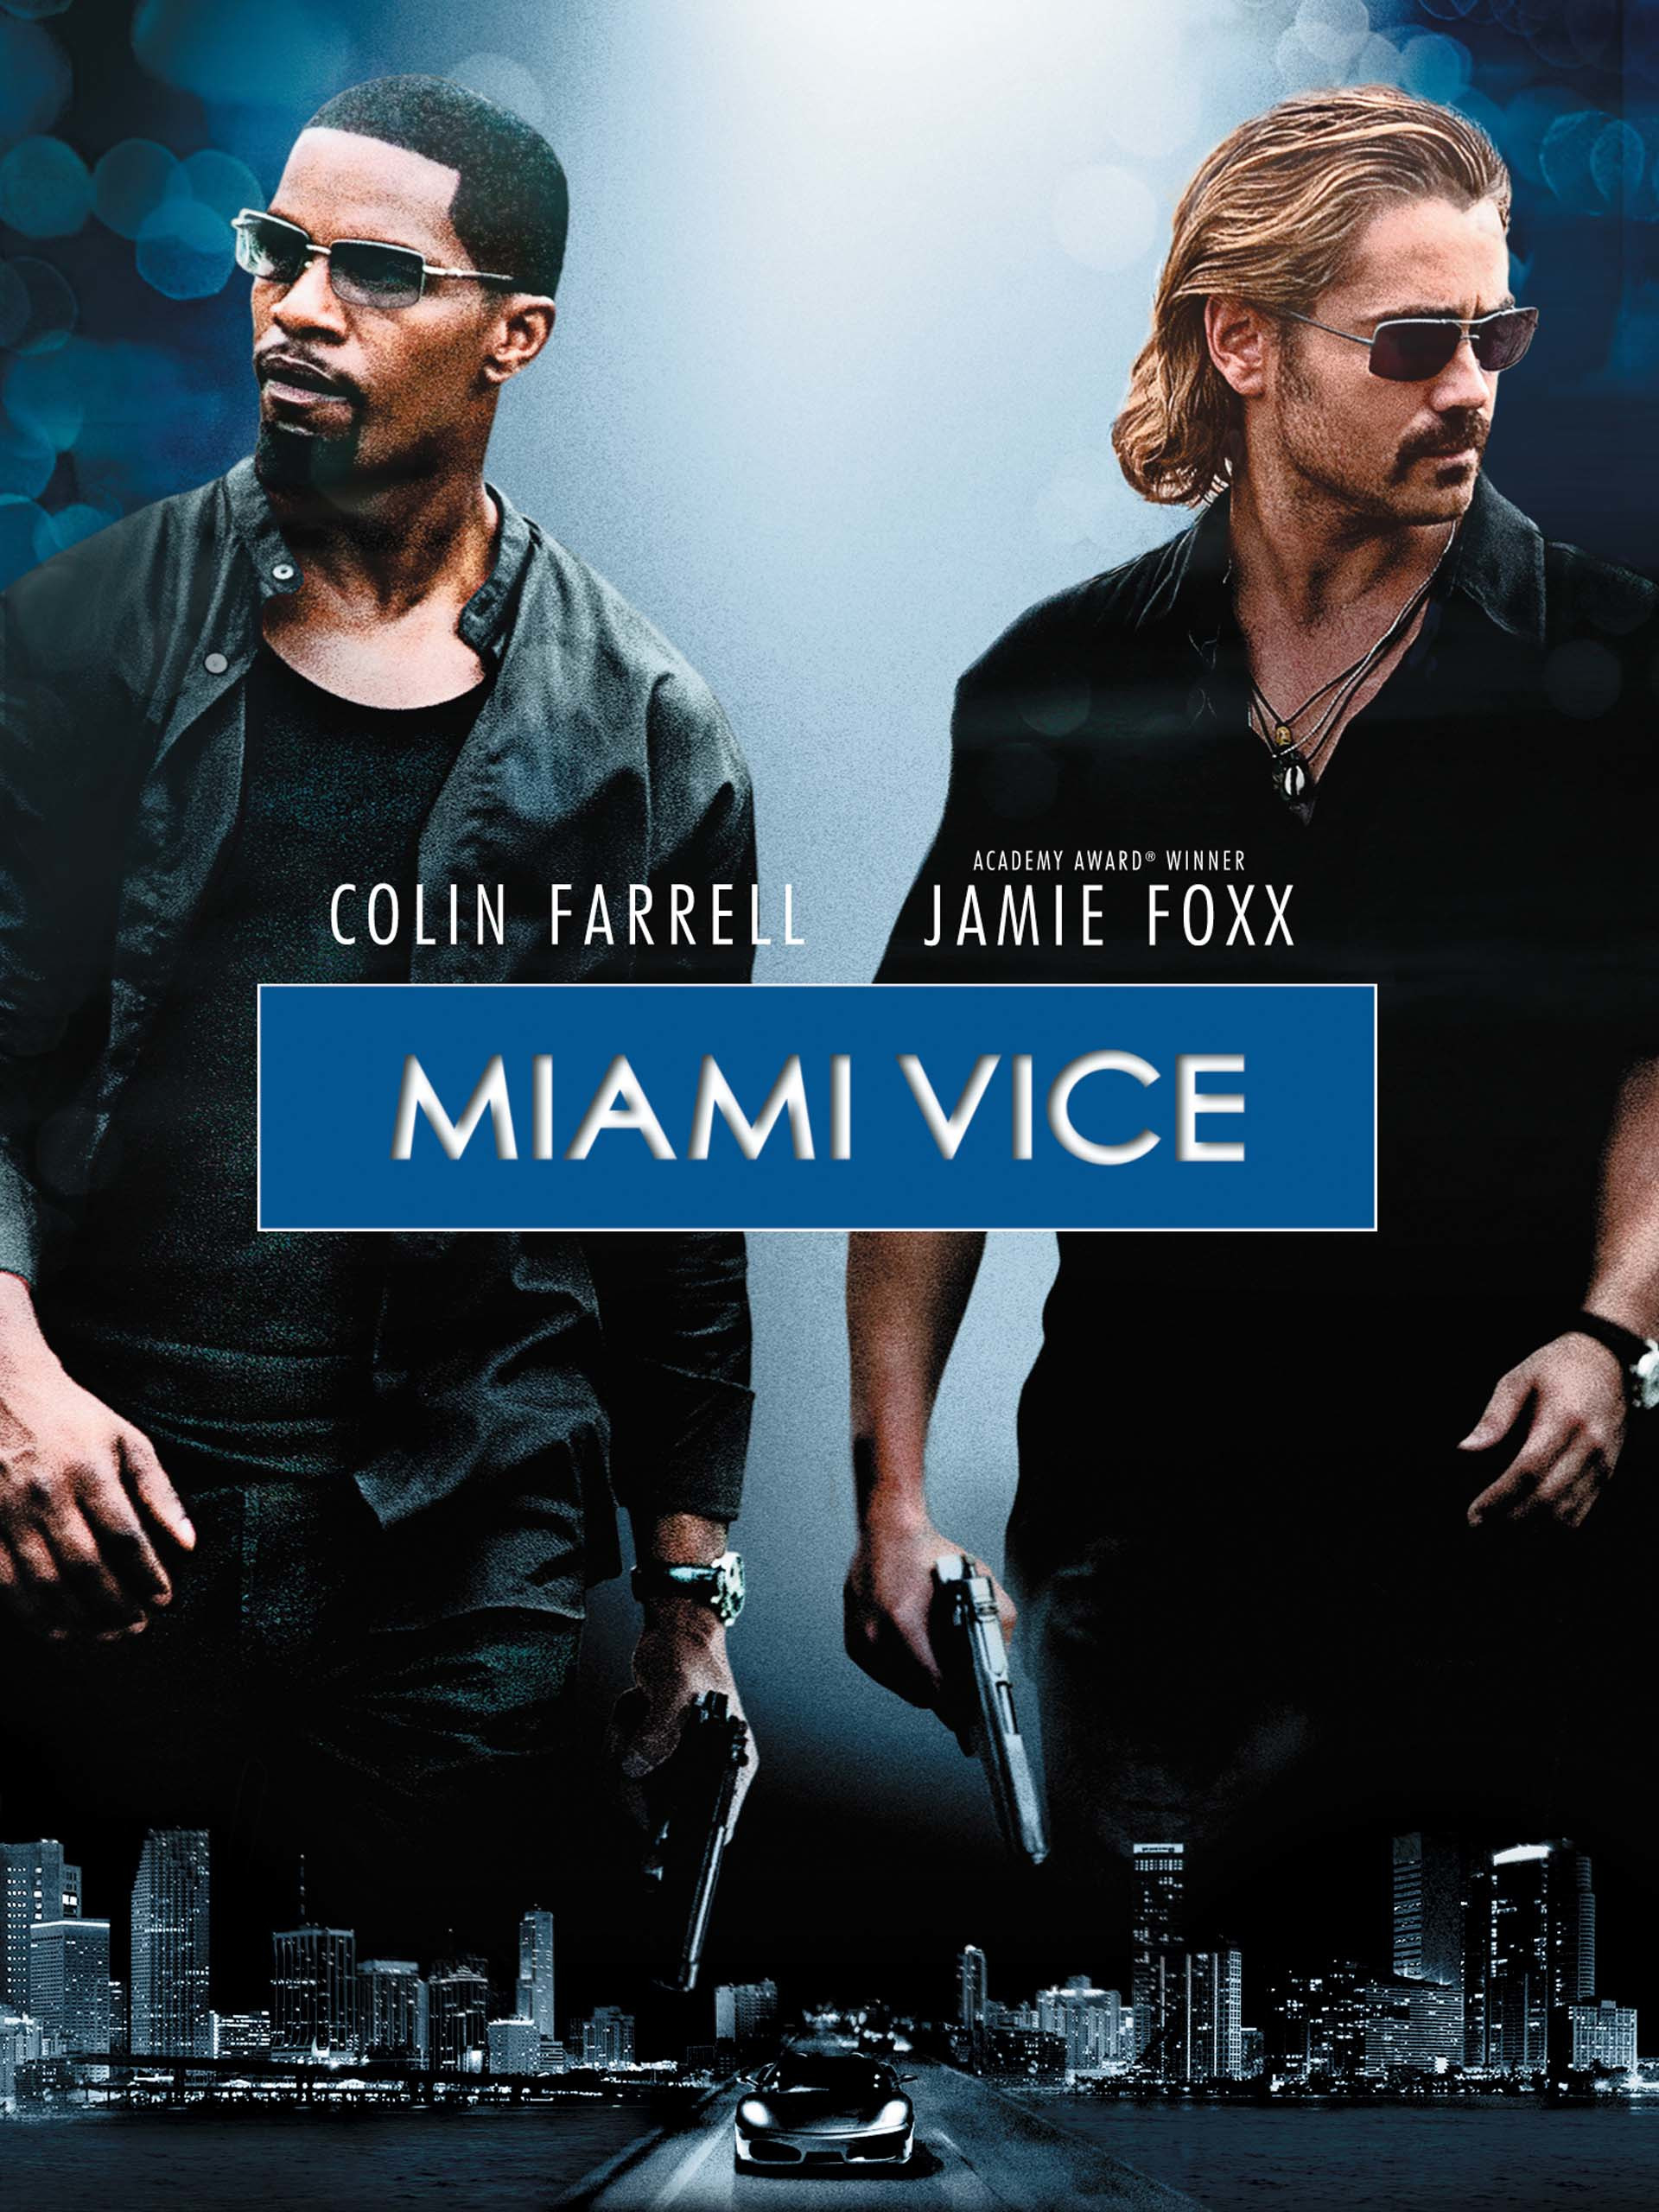 ดูหนังออนไลน์ฟรี ดูหนังออนไลน์ Miami Vice 2006 ไมอามี่ ไวซ์ คู่เดือดไมอามี่ moviehdfree